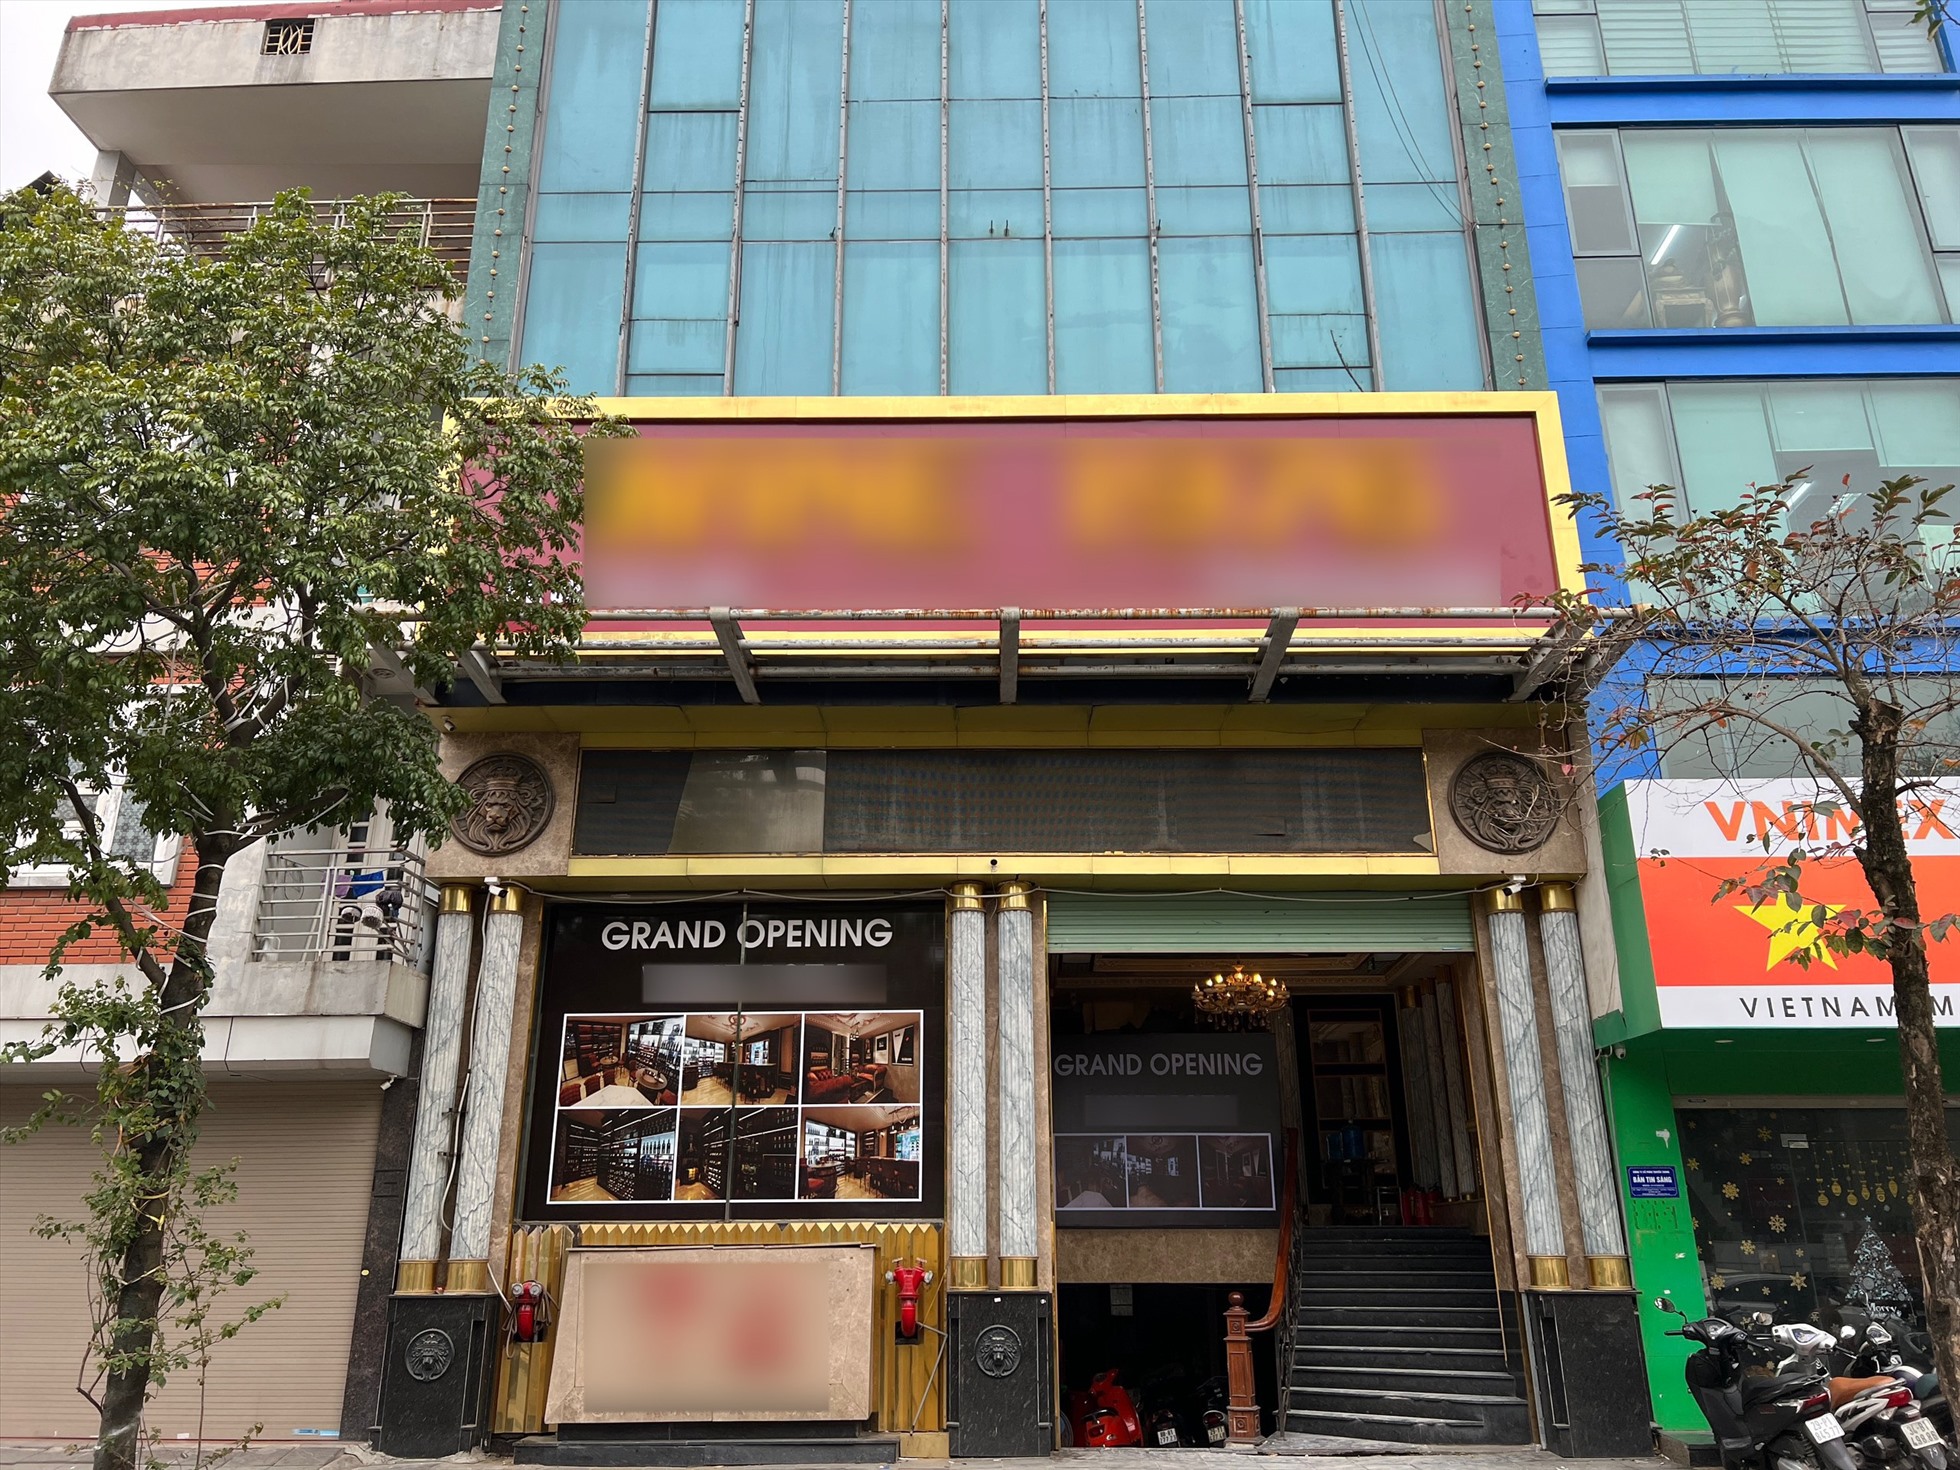 Một số quán karaoke đã dỡ biển hiệu và chuyển sang hình thức kinh doanh khác. Ảnh: Nguyễn Thúy